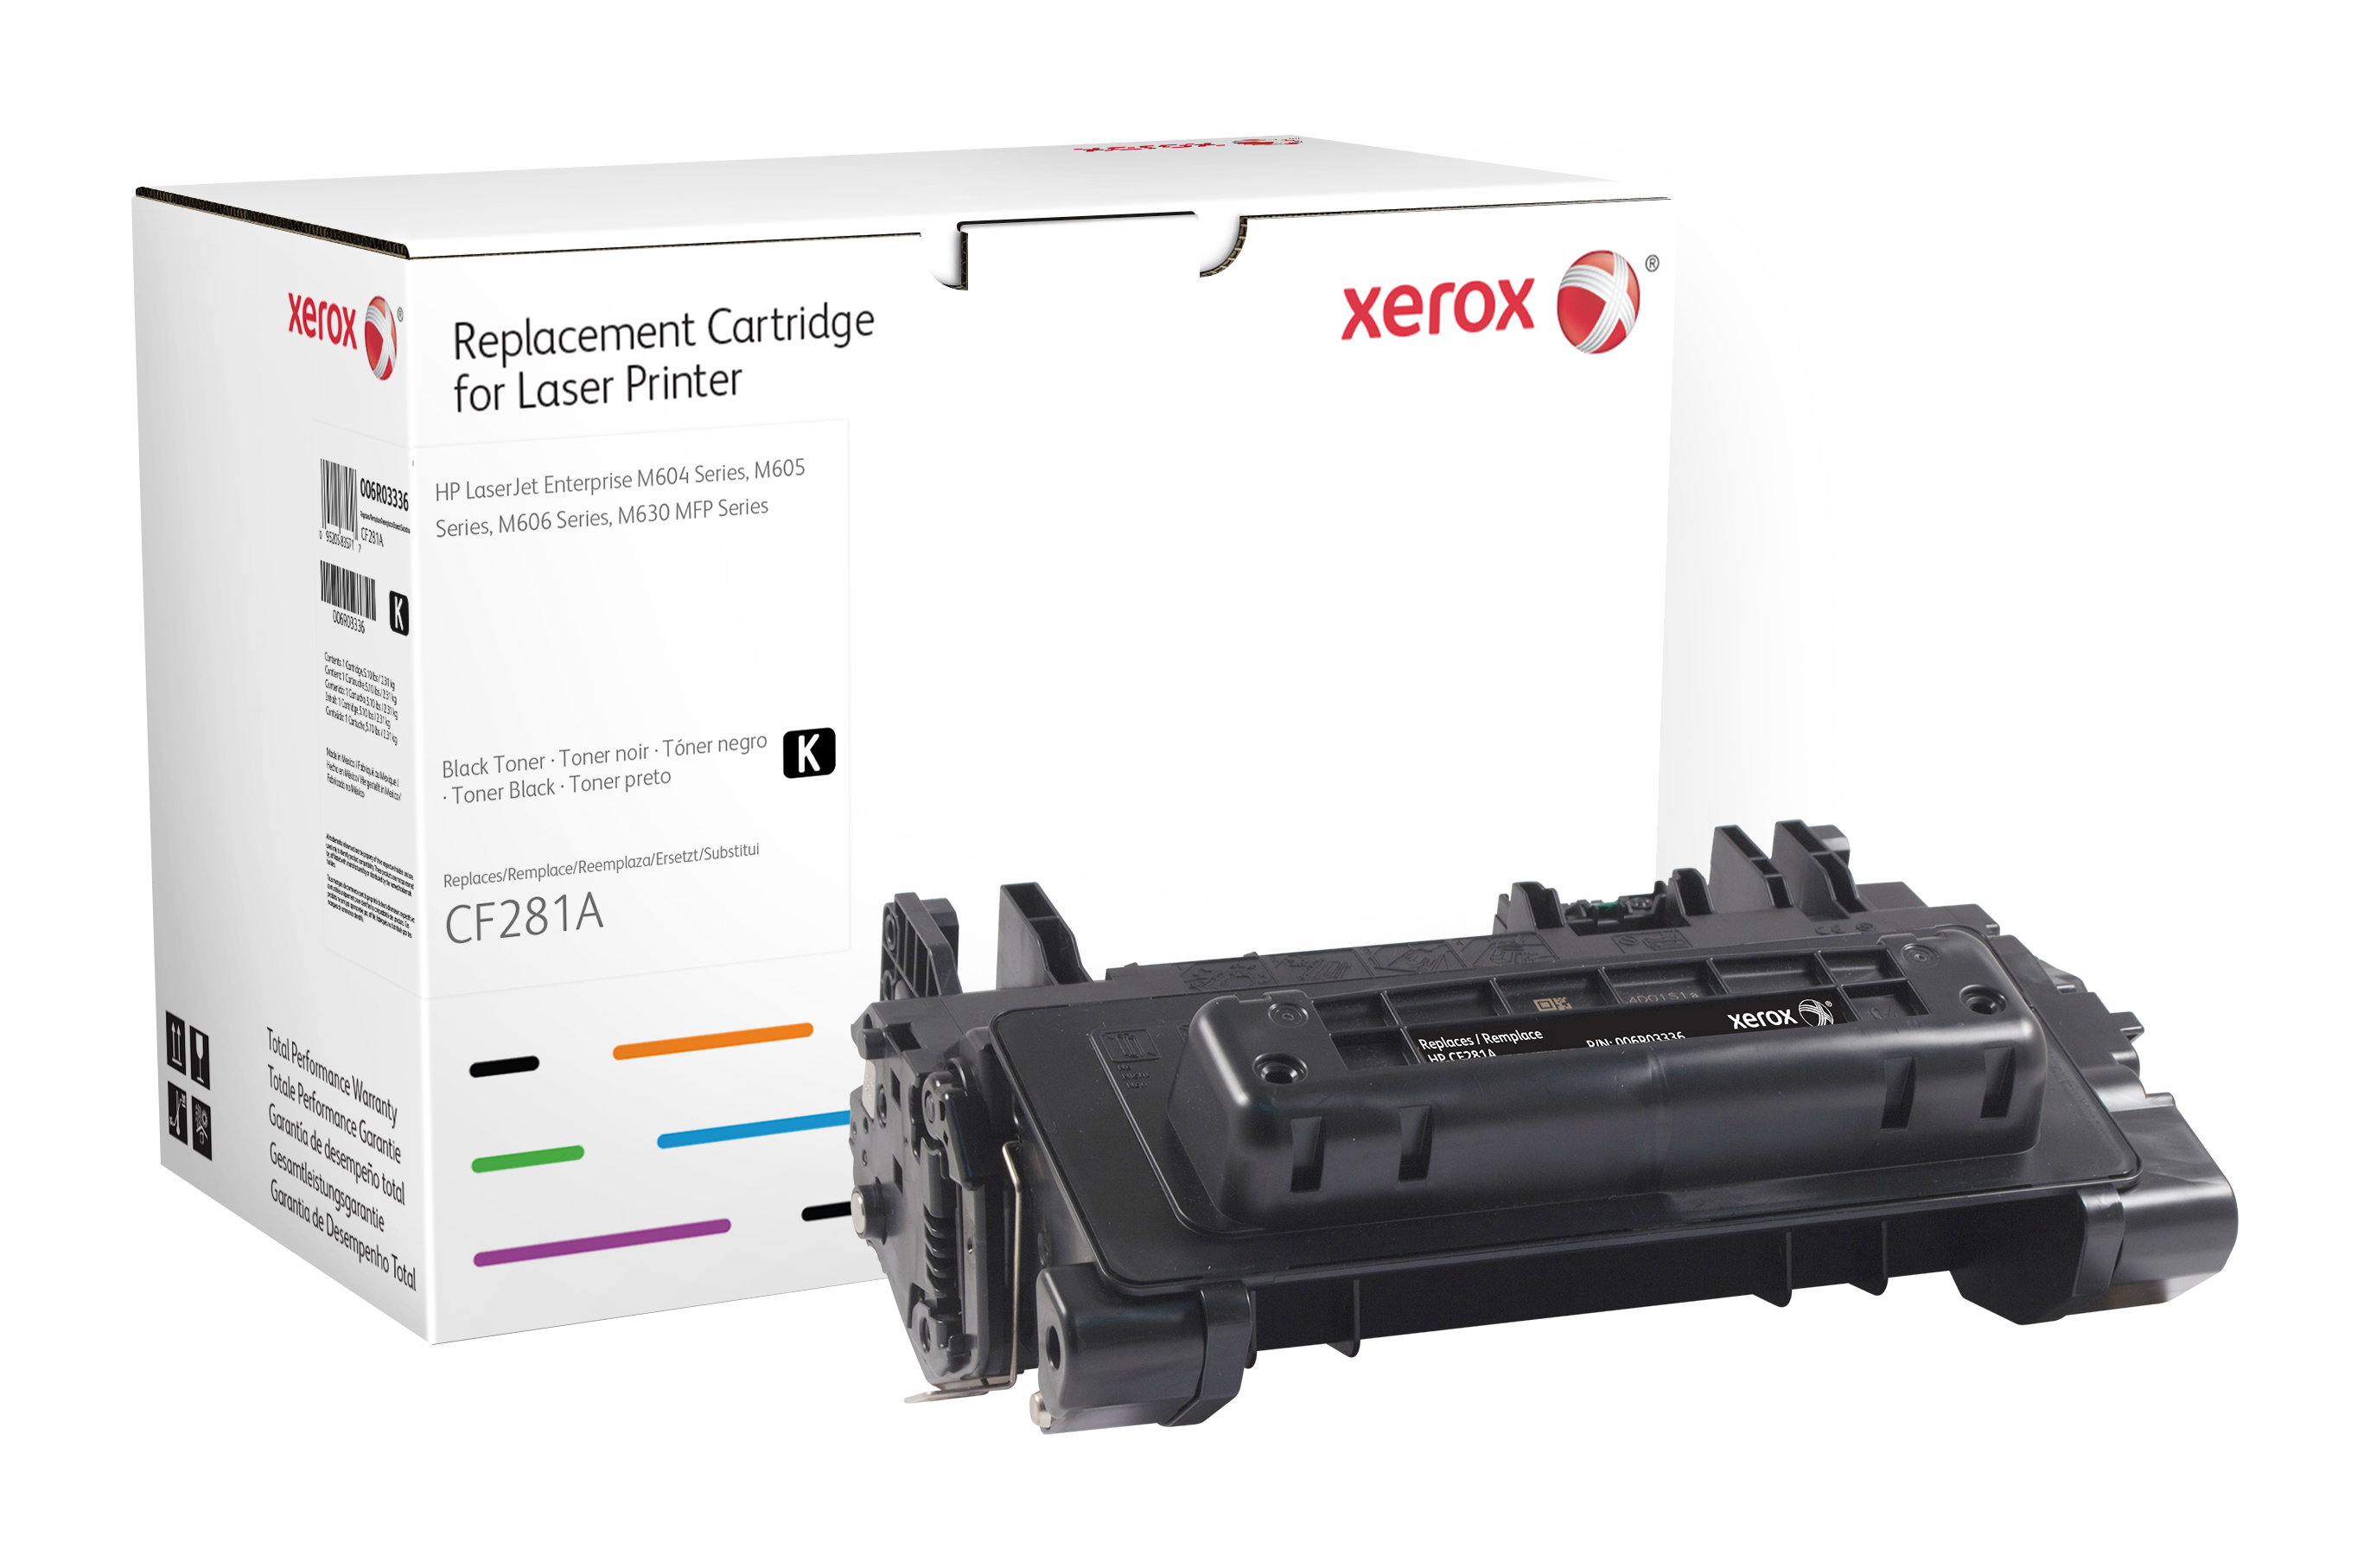 Xerox Zwarte toner cartridge. Gelijk aan HP CF281A. Compatibel met HP LaserJet M604, LaserJet M605, LaserJet M606, LaserJet M625, LaserJet M630